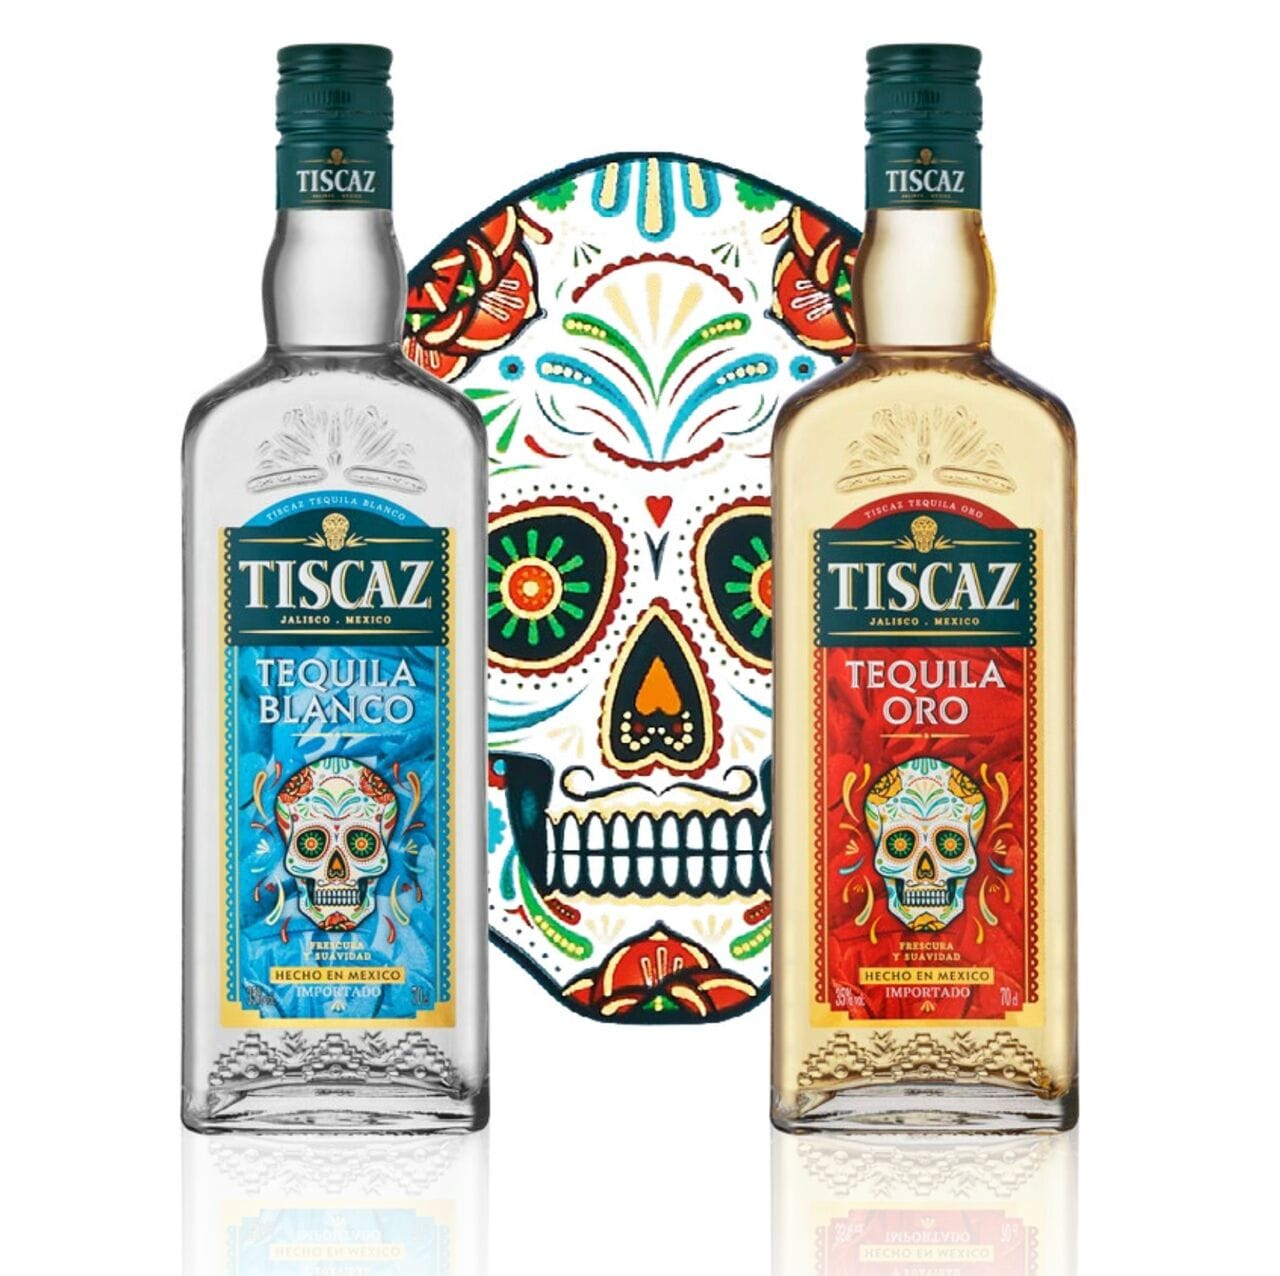 Les références Blanco et Oro de la gamme de Tequilas TISCAZ font peau neuve